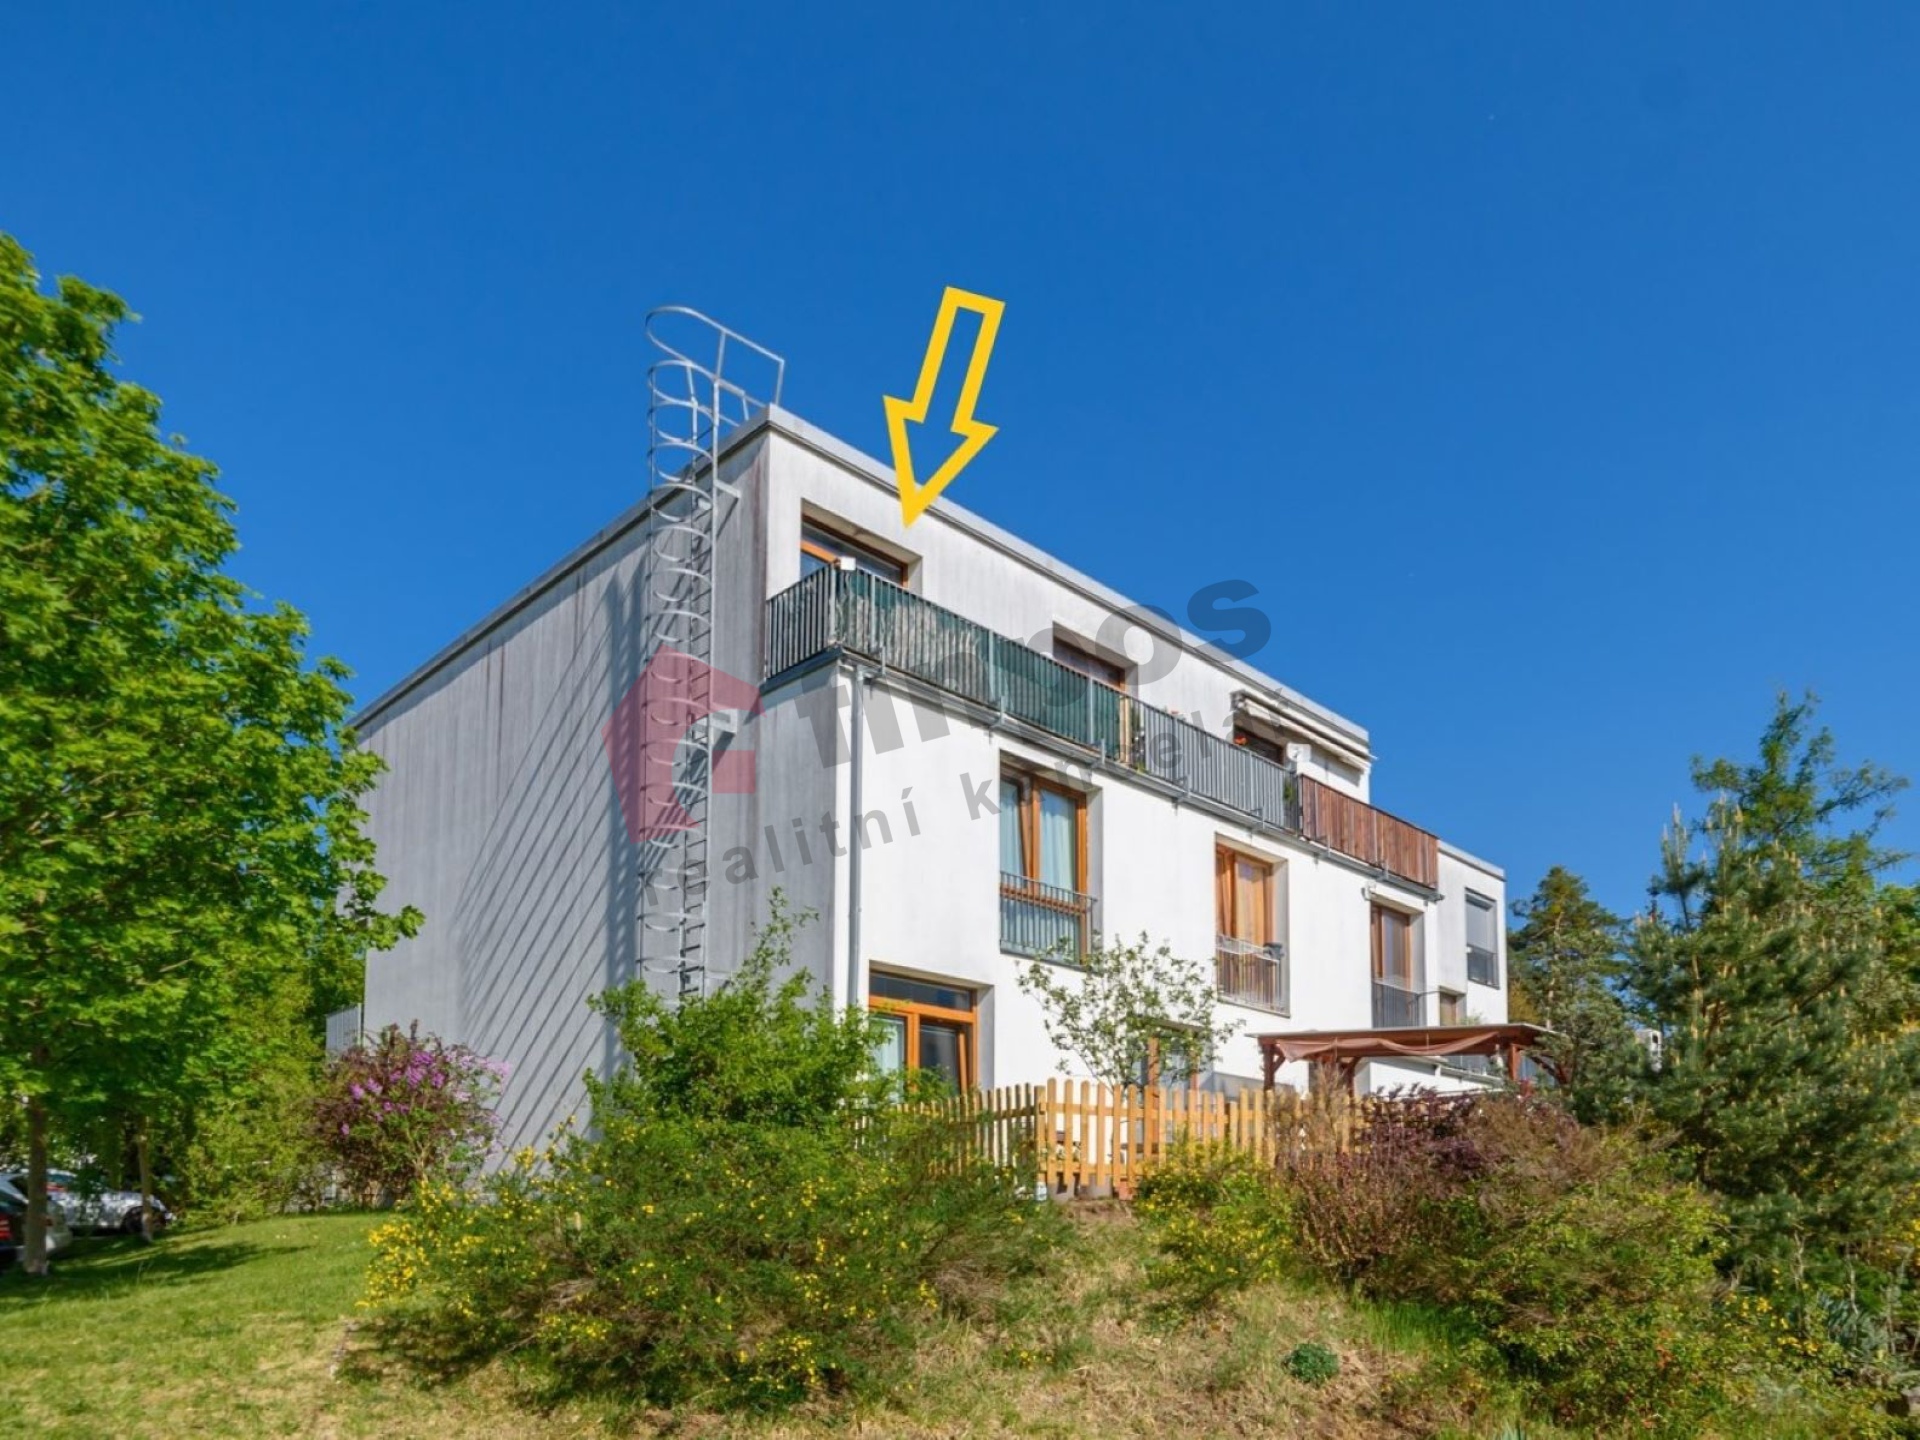 Prodej bytu 2+kk 52 m2 + 5 m2 terasa + lodžie - Brodce - Týnec nad Sázavou.